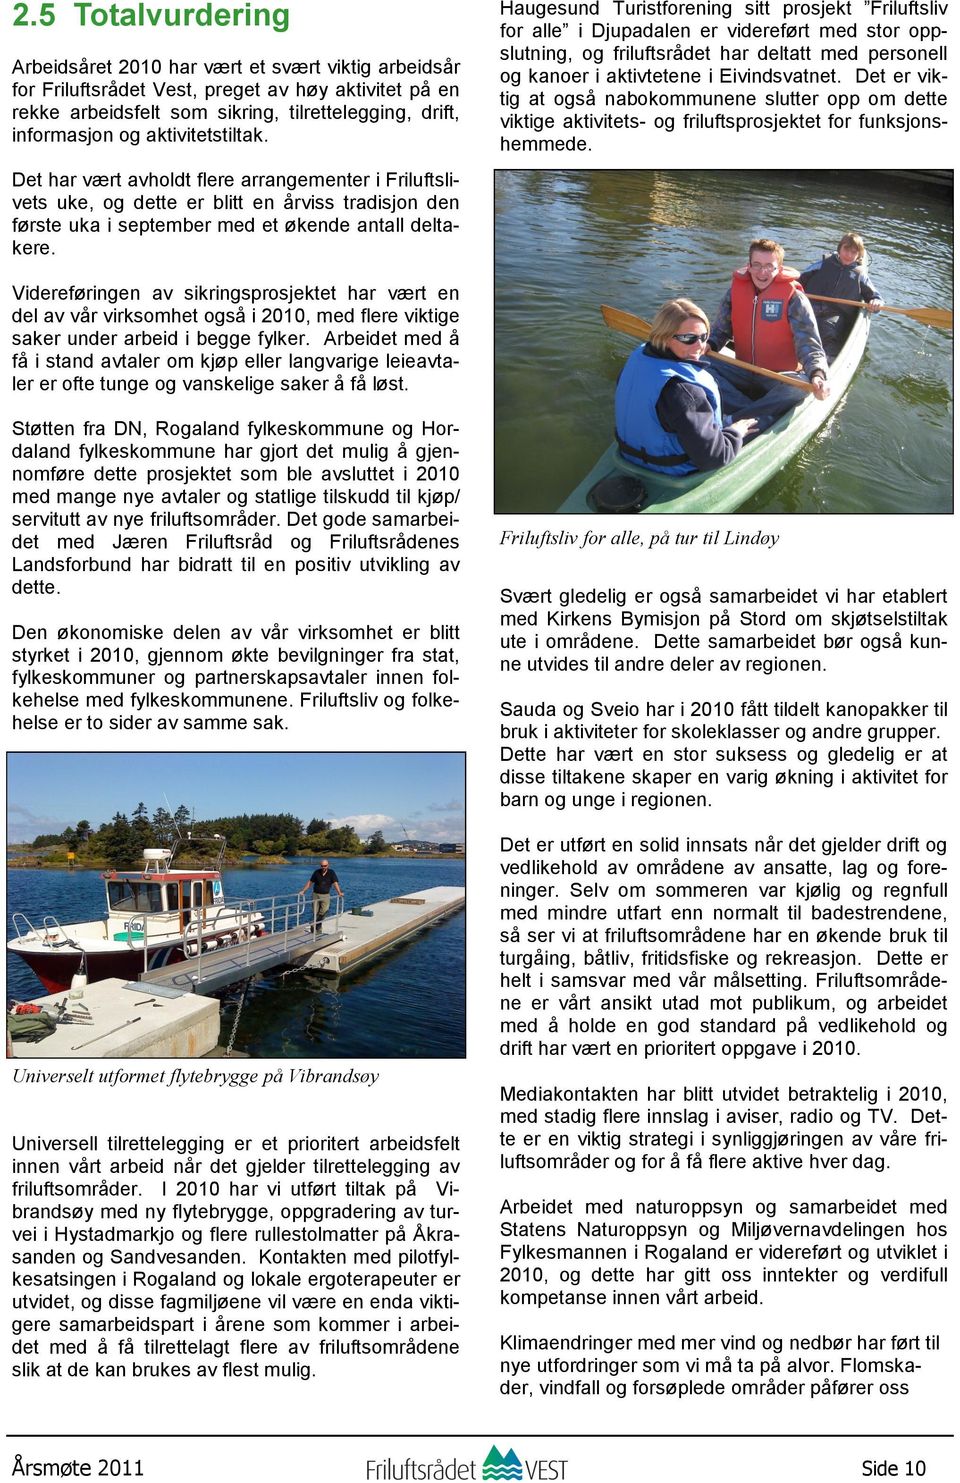 Haugesund Turistforening sitt prosjekt Friluftsliv for alle i Djupadalen er videreført med stor oppslutning, og friluftsrådet har deltatt med personell og kanoer i aktivtetene i Eivindsvatnet.